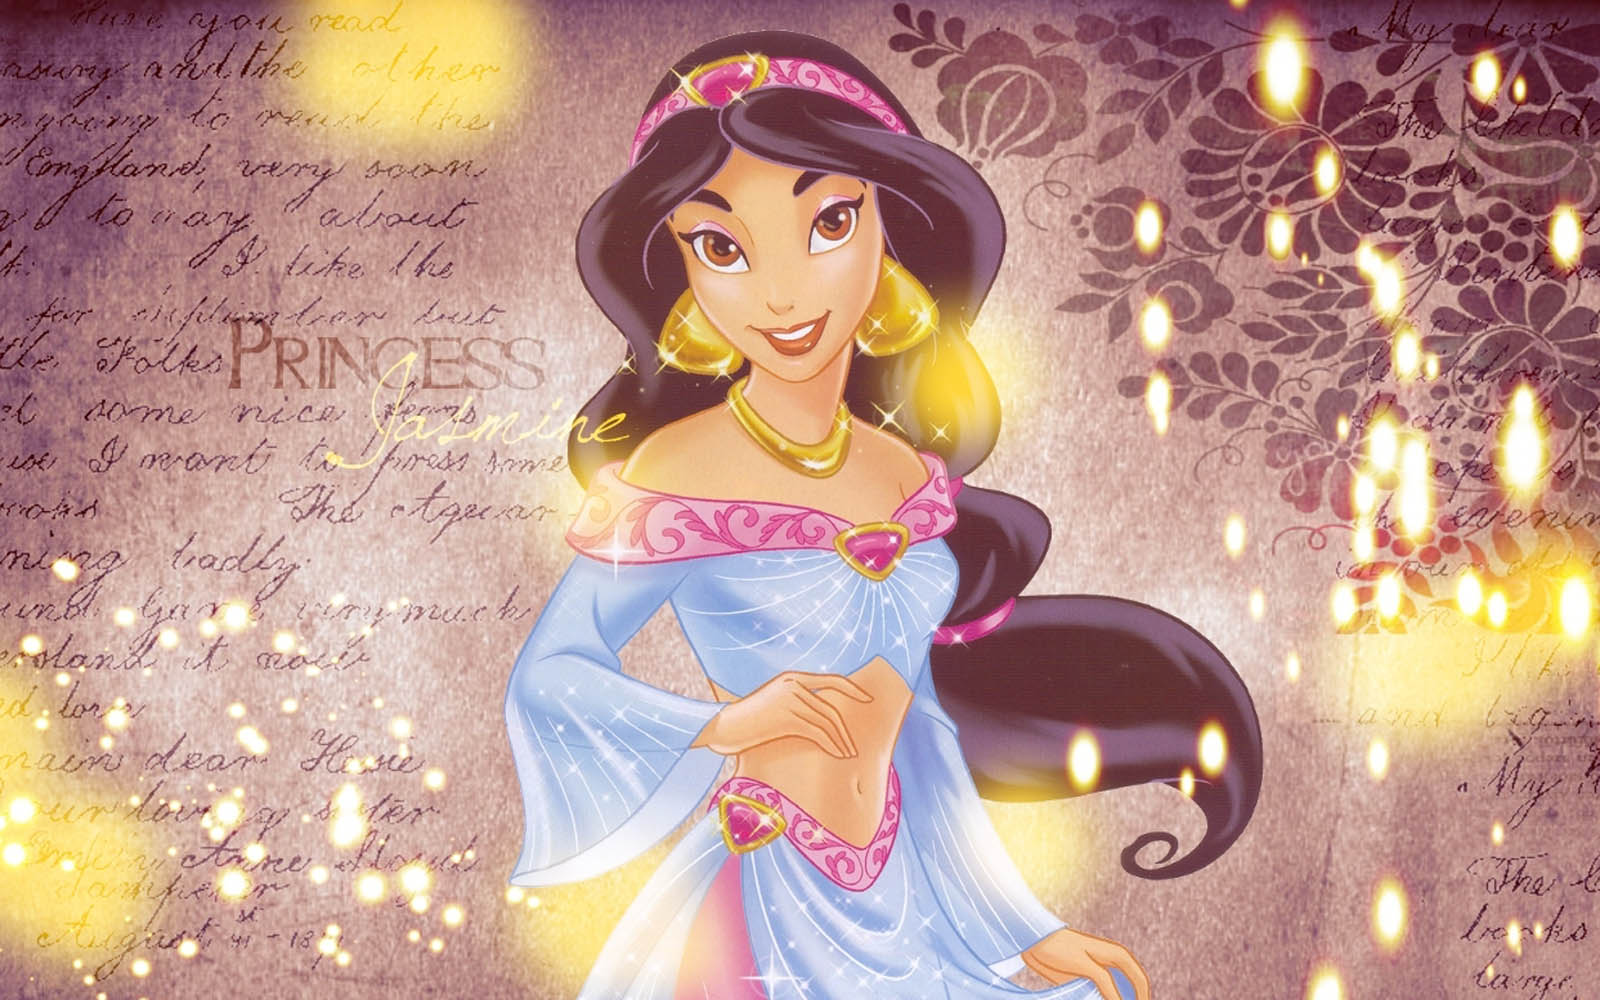 Jasmine Wallpaper Disneyprincess Desktop Disney